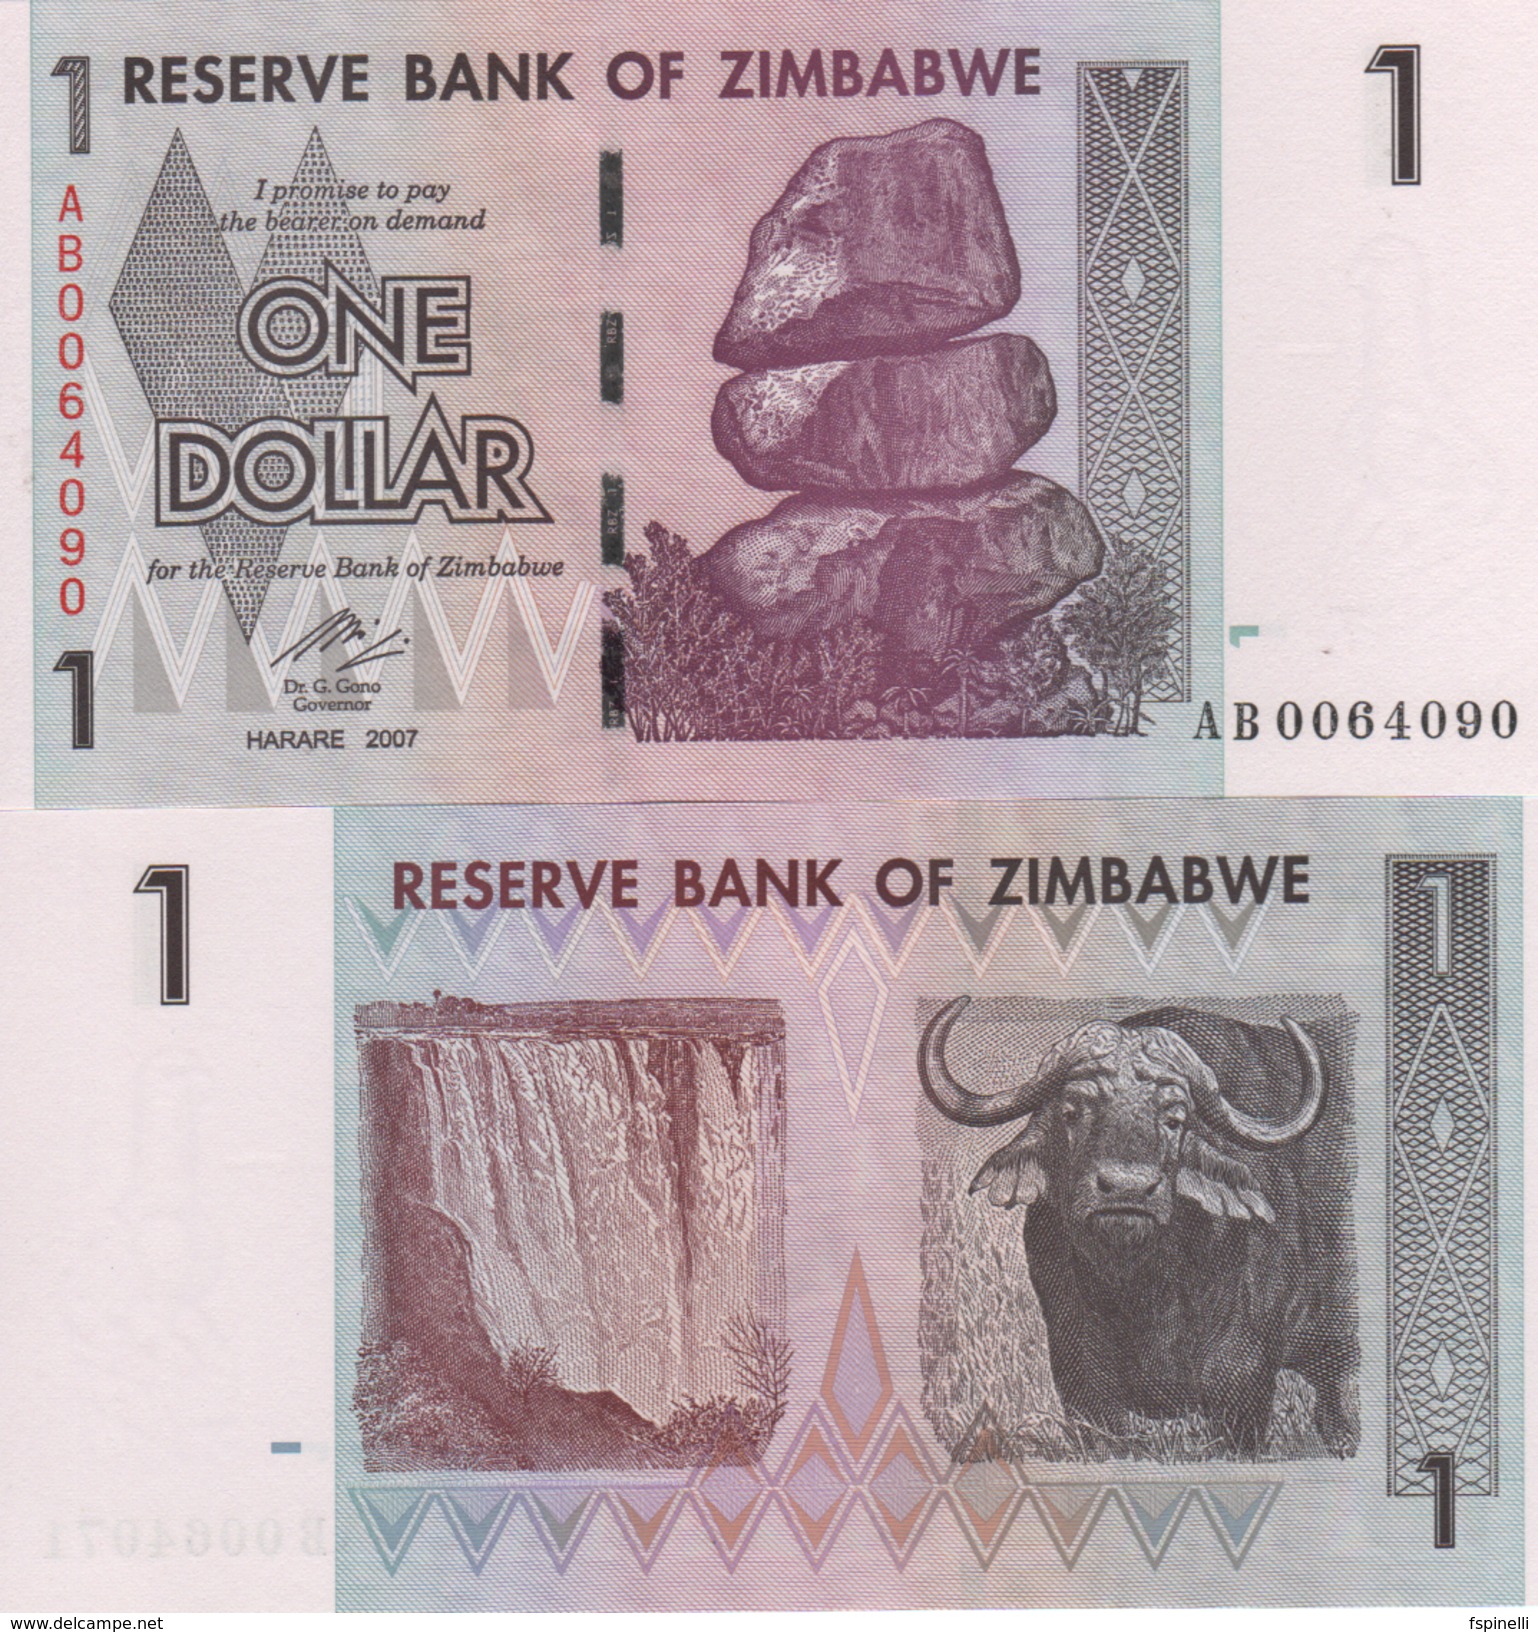 ZIMBABWE   1 Dollar P65    Dated   Harare  2007   UNC. - Zimbabwe